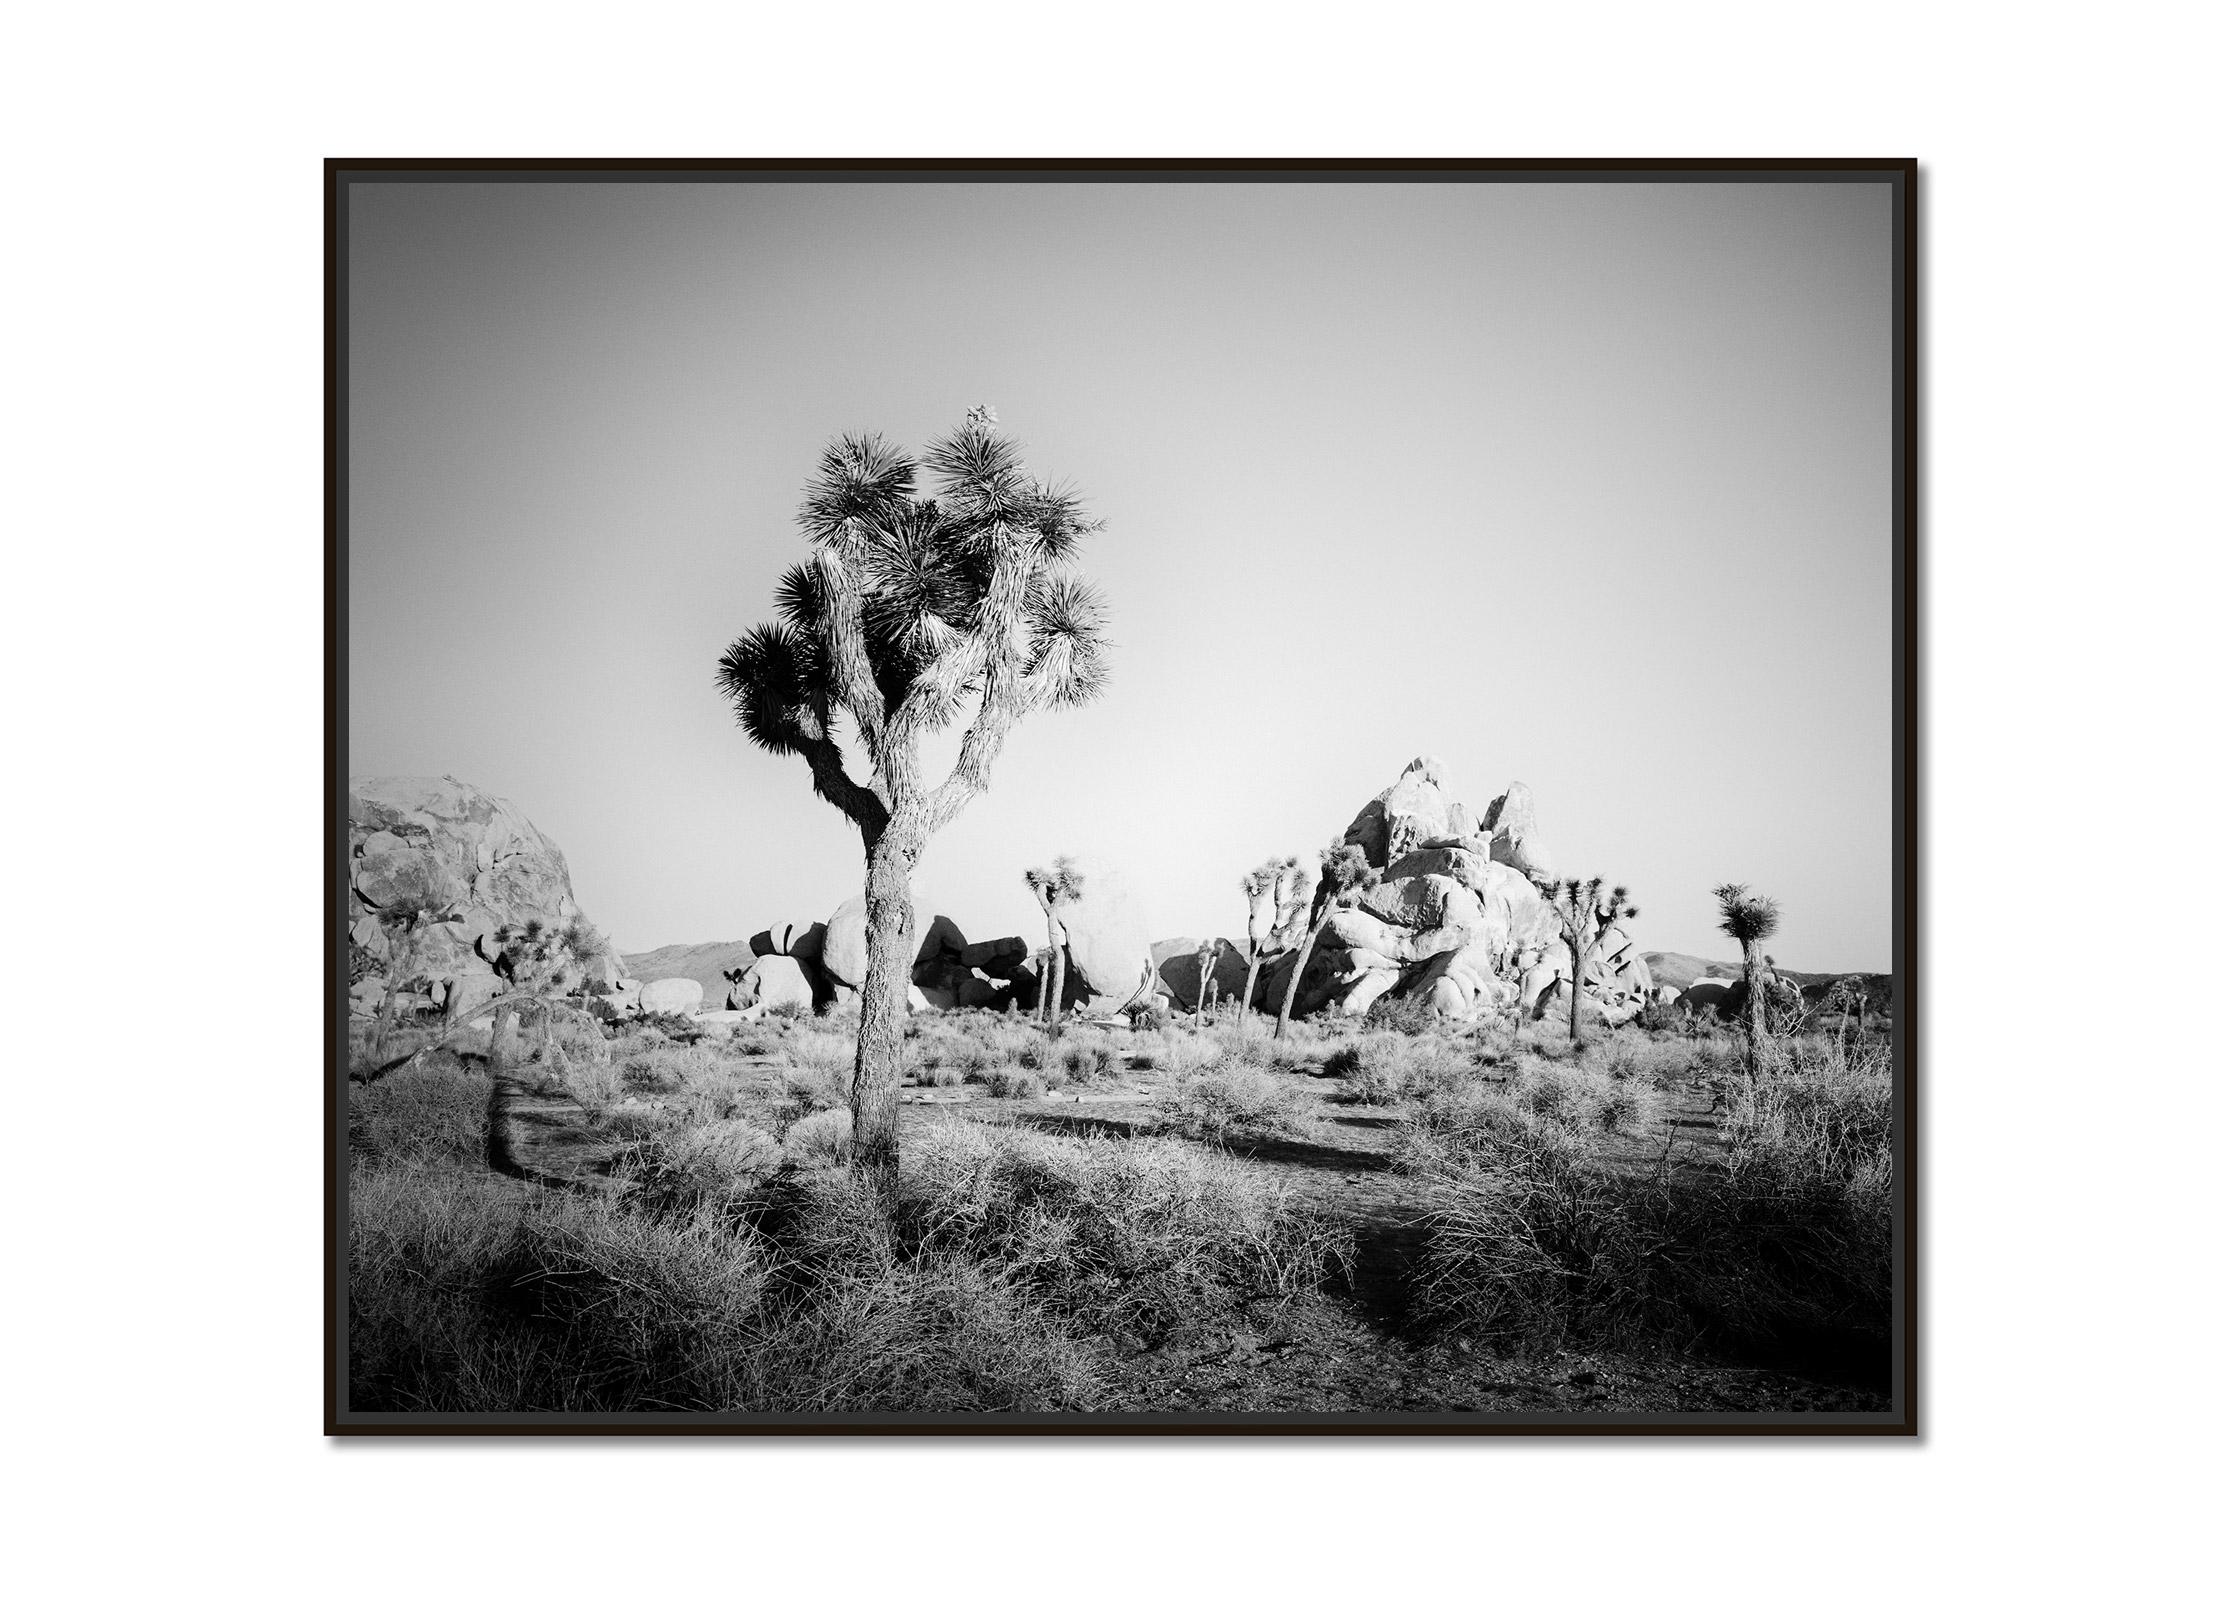 Joshua Tree, Felsen, Wüste, Kalifornien, USA, Schwarz-Weiß-Landschaftsfotografie – Photograph von Gerald Berghammer